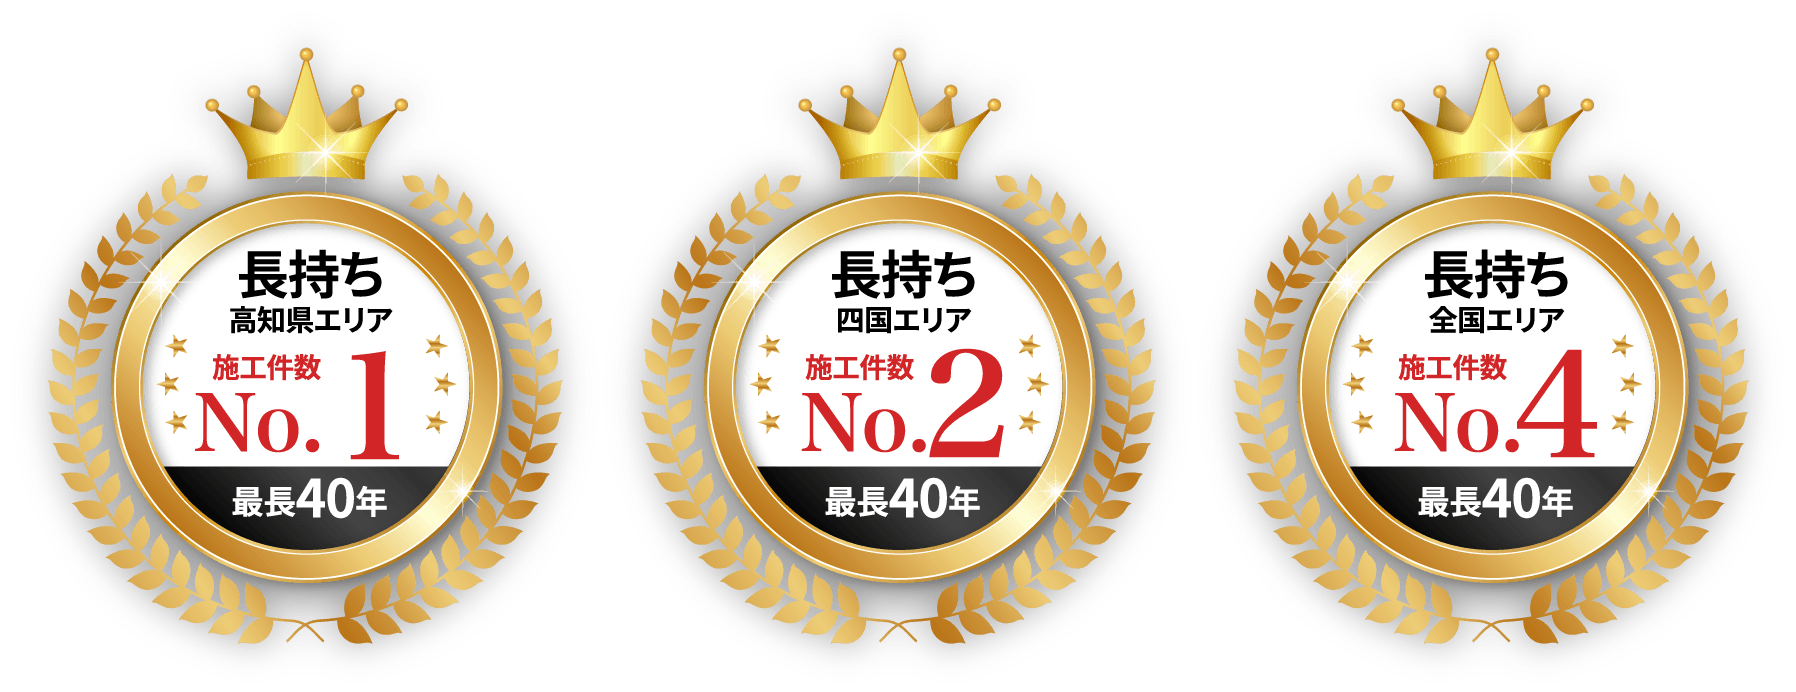 高知県エリアNo.1、四国エリアNo.２、全国エリアNo.4に選ばれました